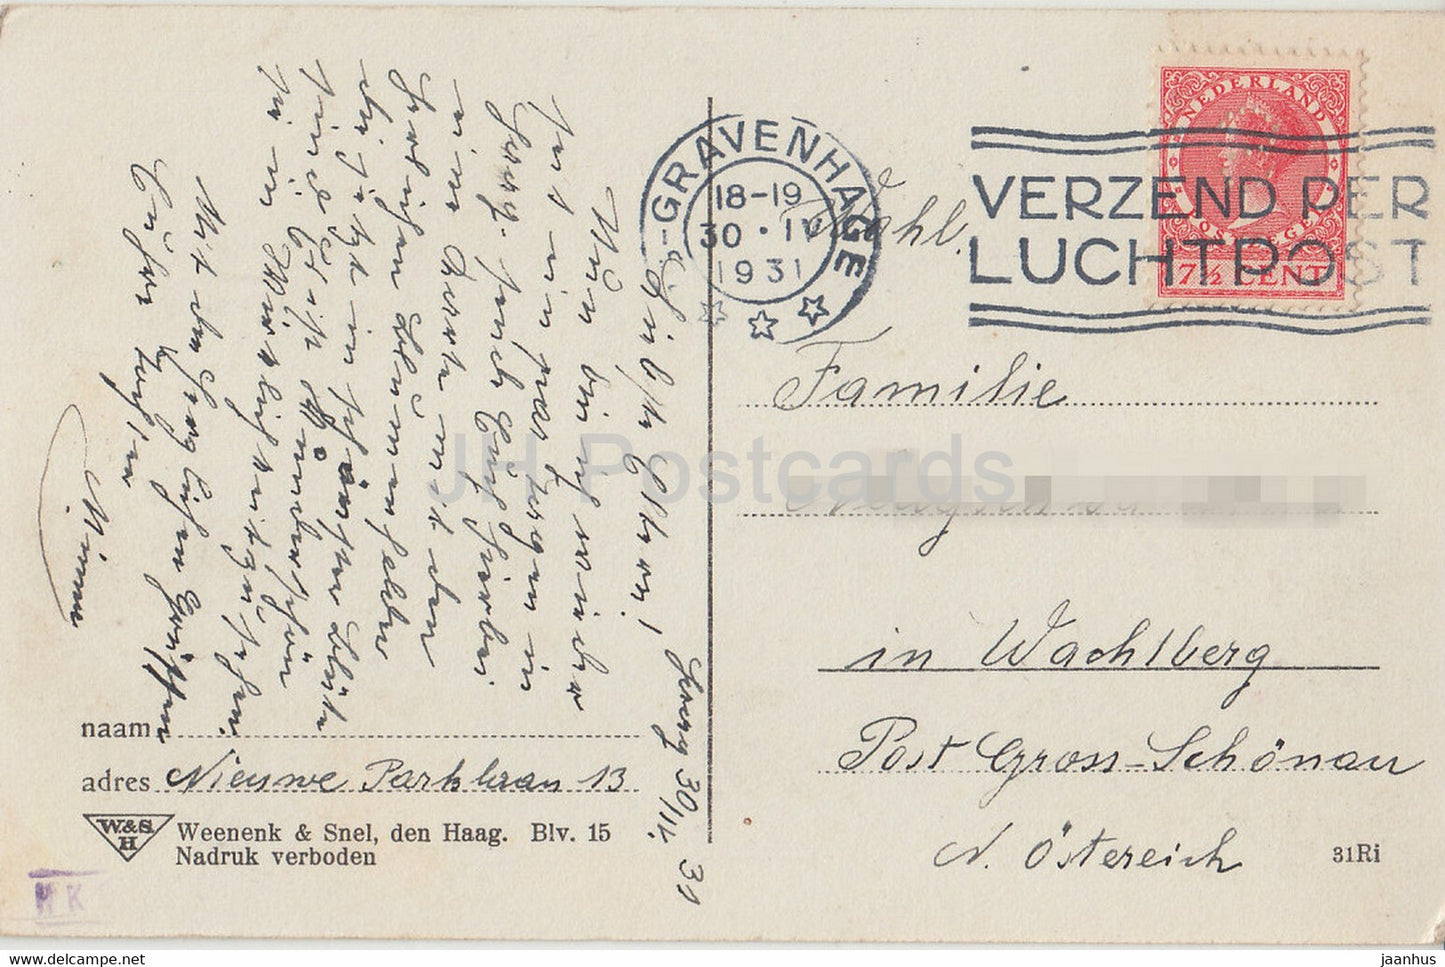 Uit de Bloemenvelden - Hyacinthen - champ de fleurs - moulin à vent - carte postale ancienne - 1931 - Pays-Bas - utilisé